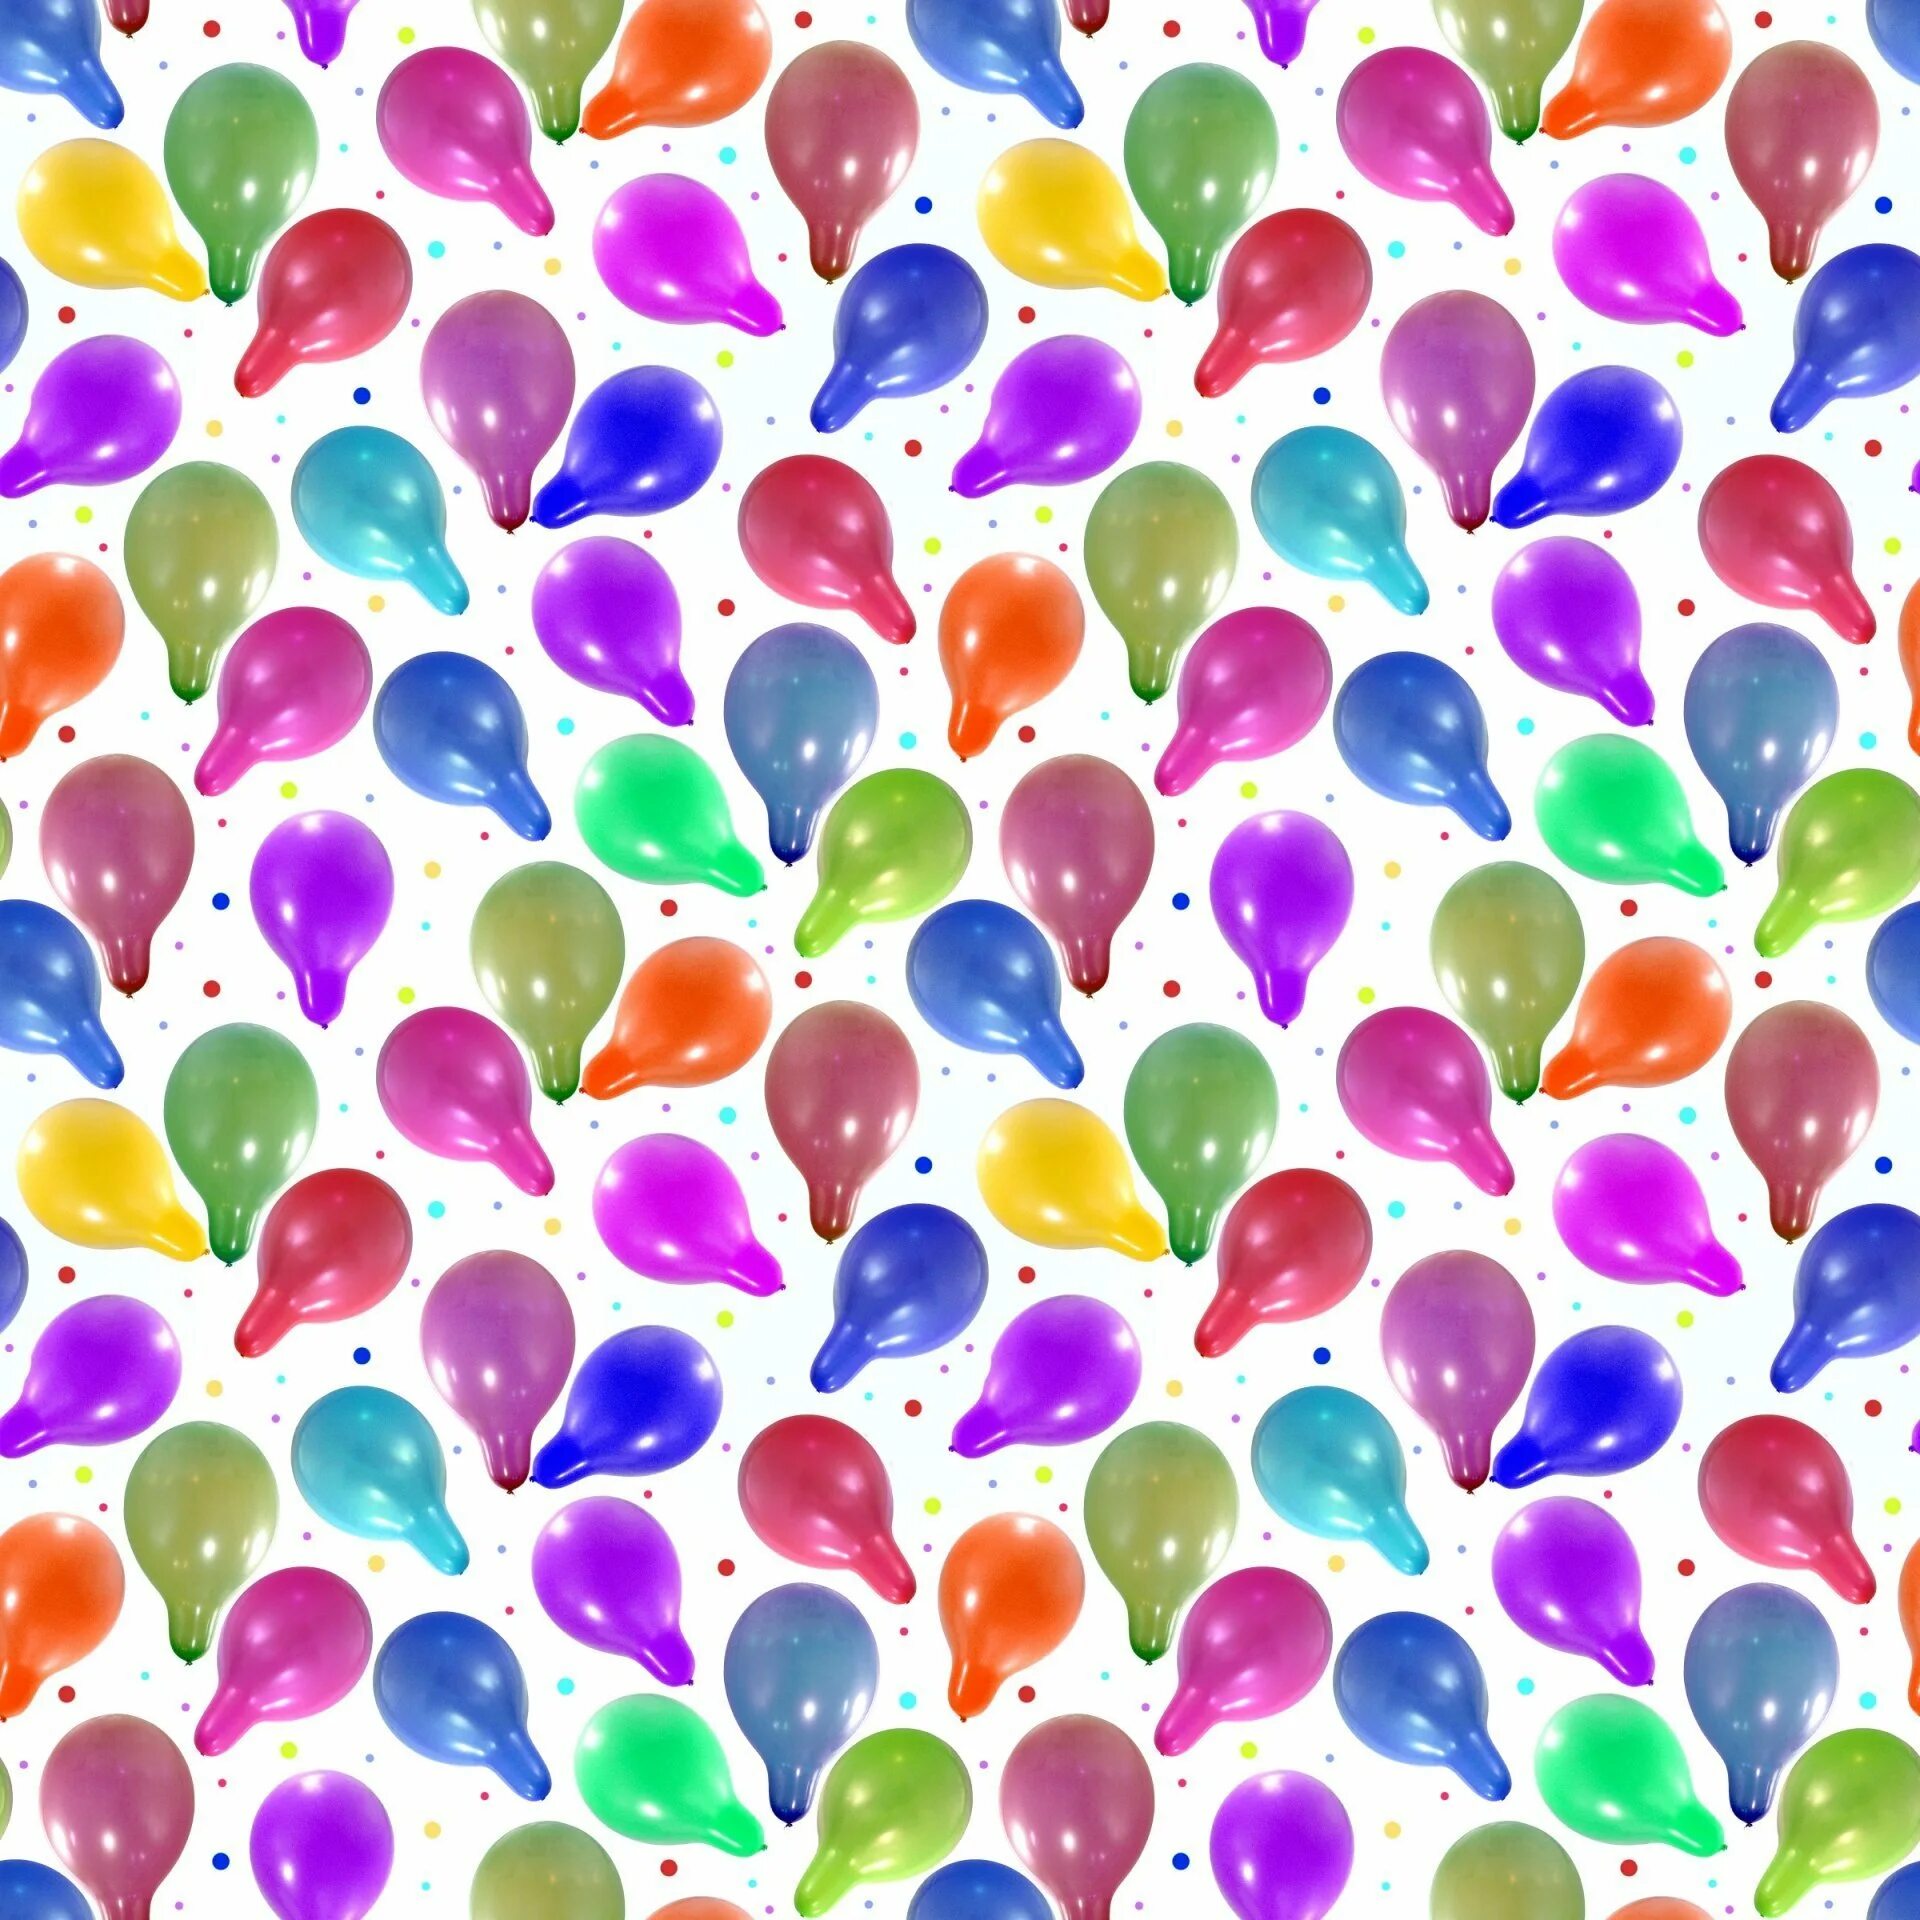 Текстура шаров. Фон шарики воздушные. Фон с воздушными шарами. Бесшовный фон воздушные шары. Воздушные шары текстура.